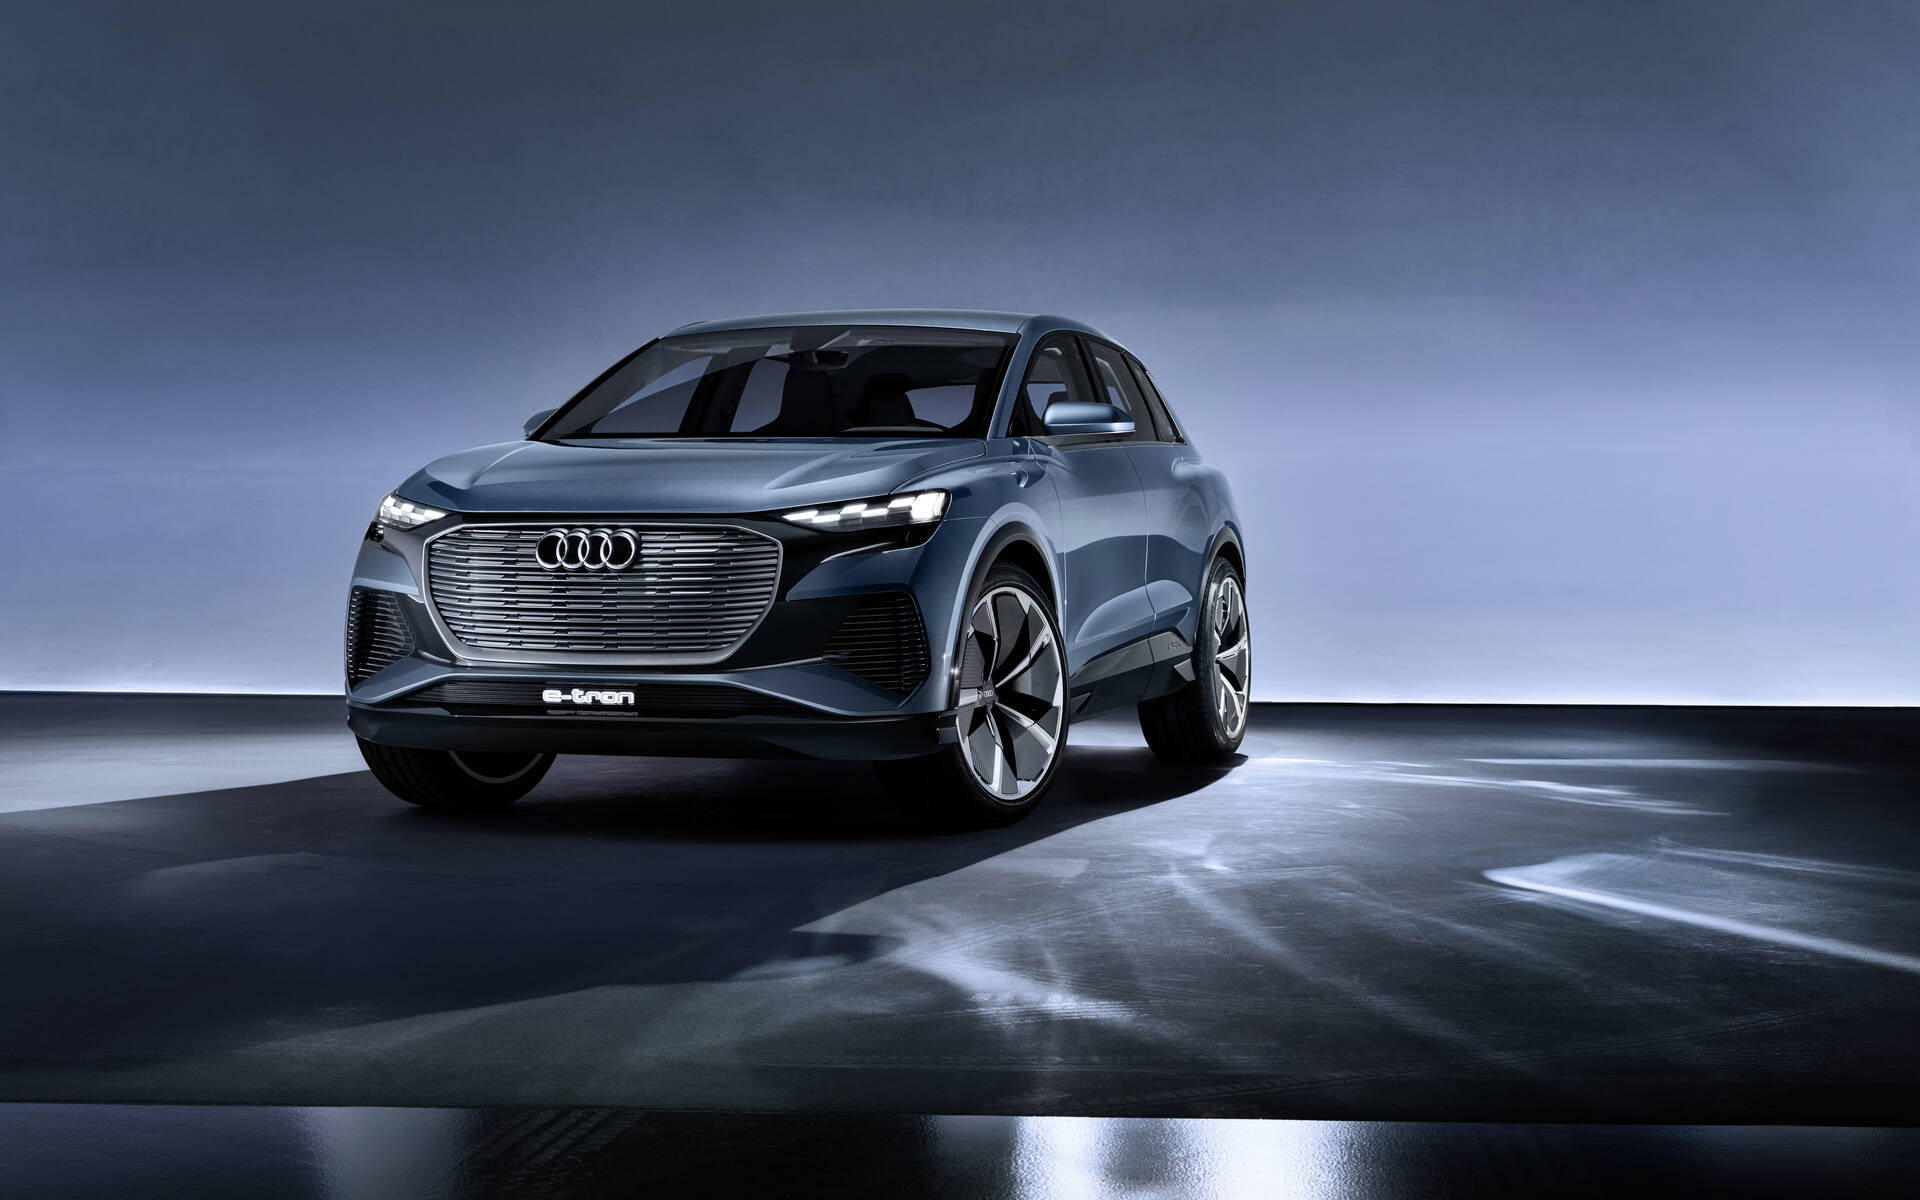 2022 Audi Q4 e-tron: Sneak Peek Inside Audi's Next EV - The Car Guide